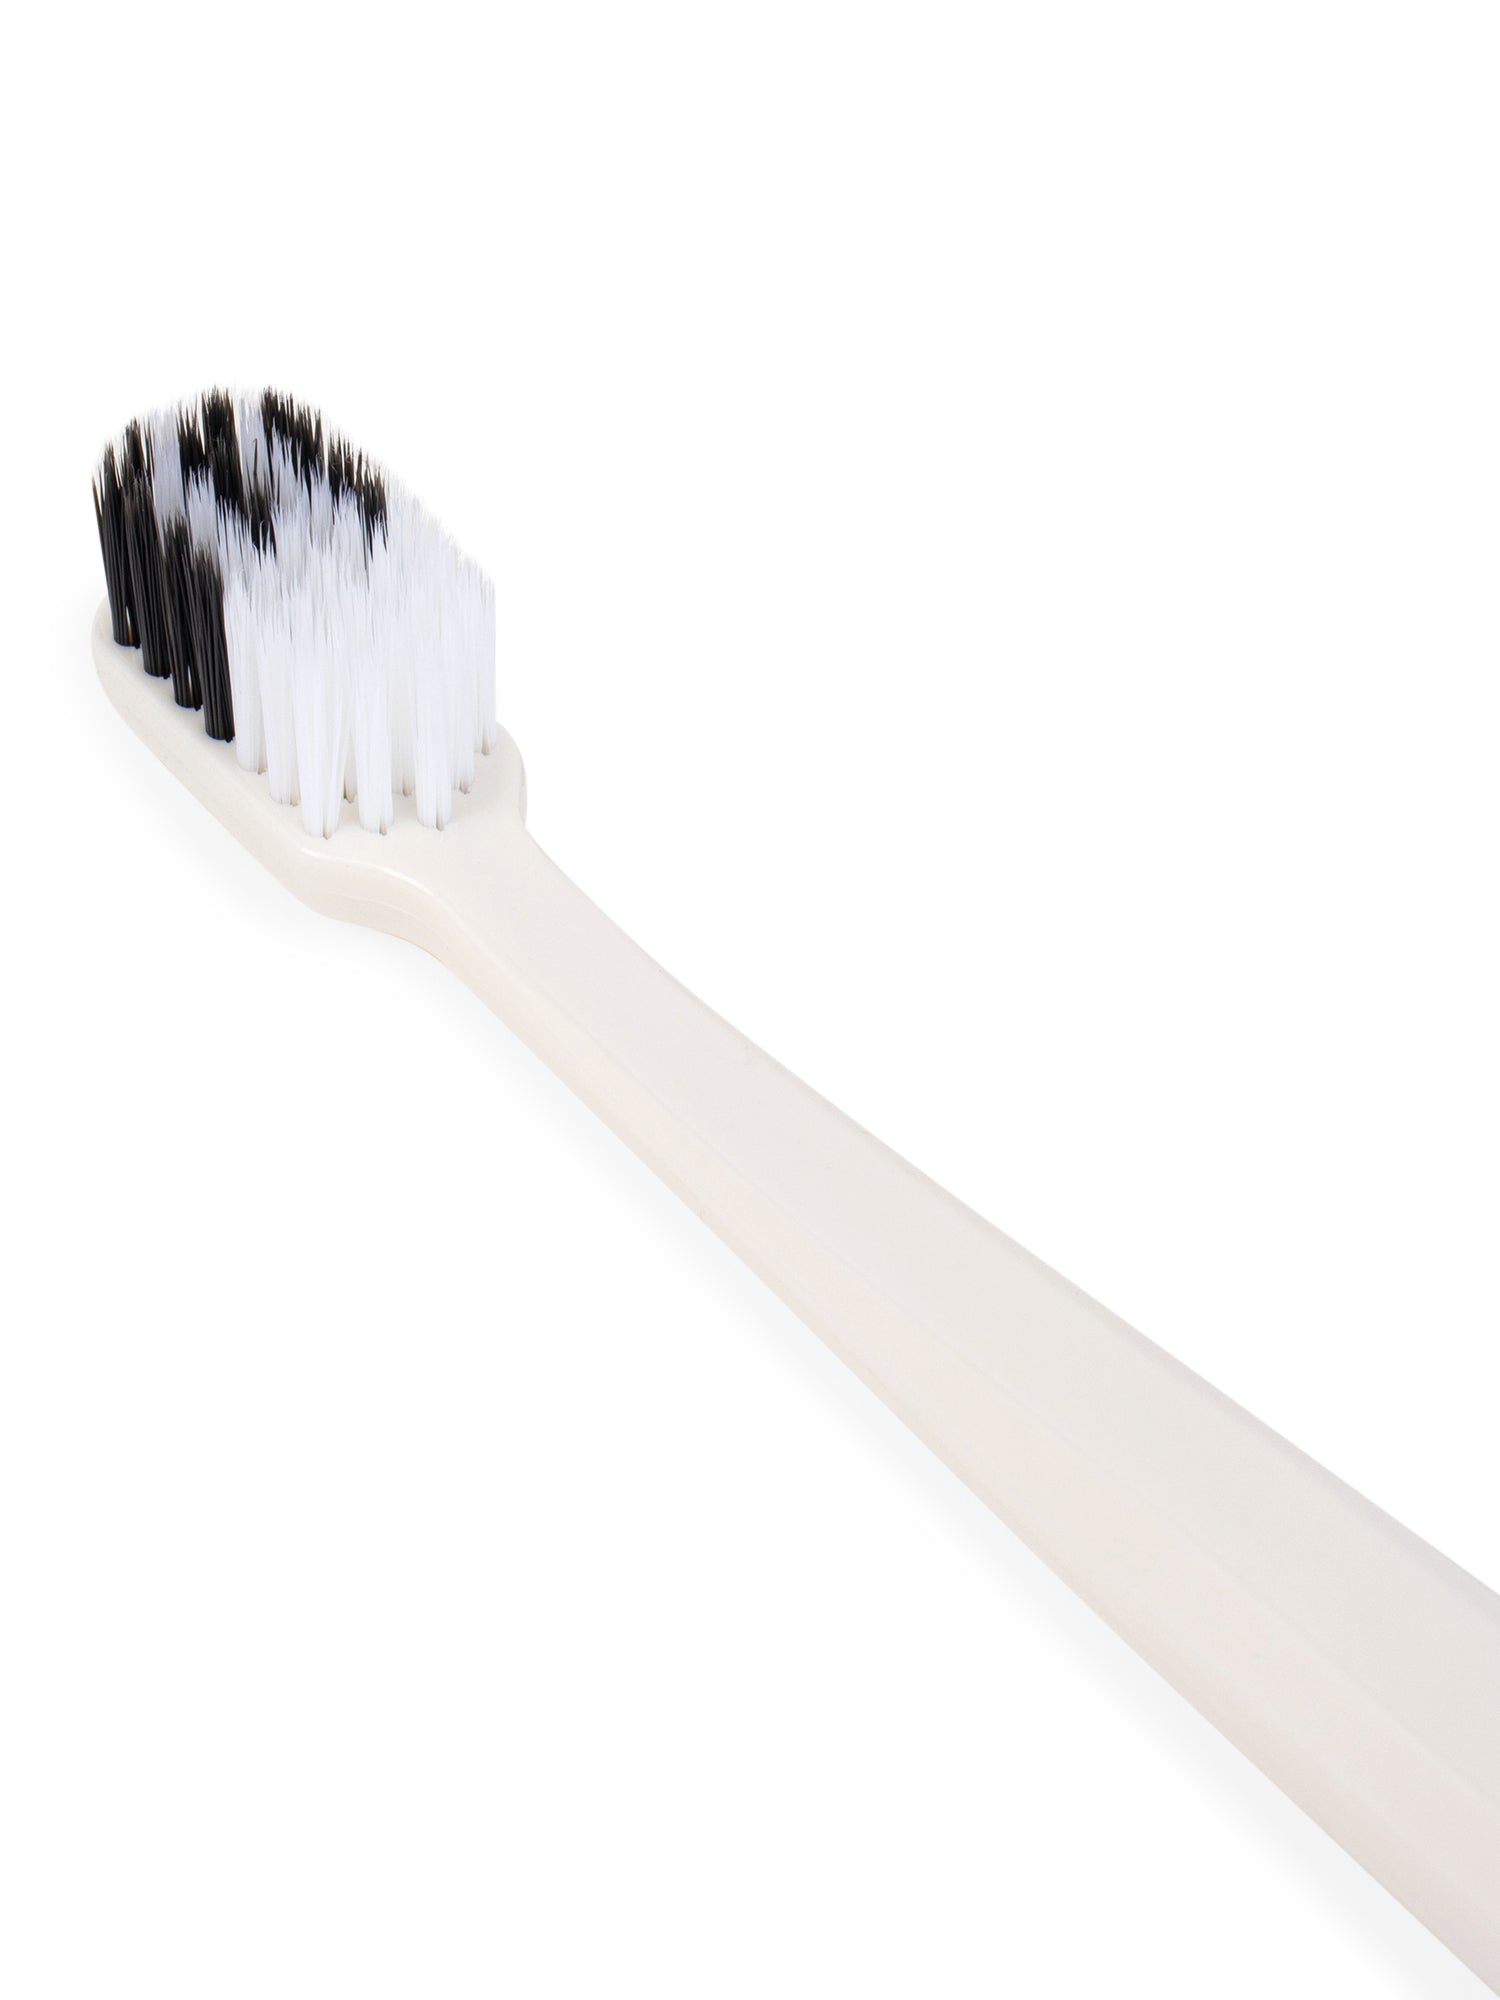 Bio White Adult Biodegradable Toothbrush - Indian Dental Organization